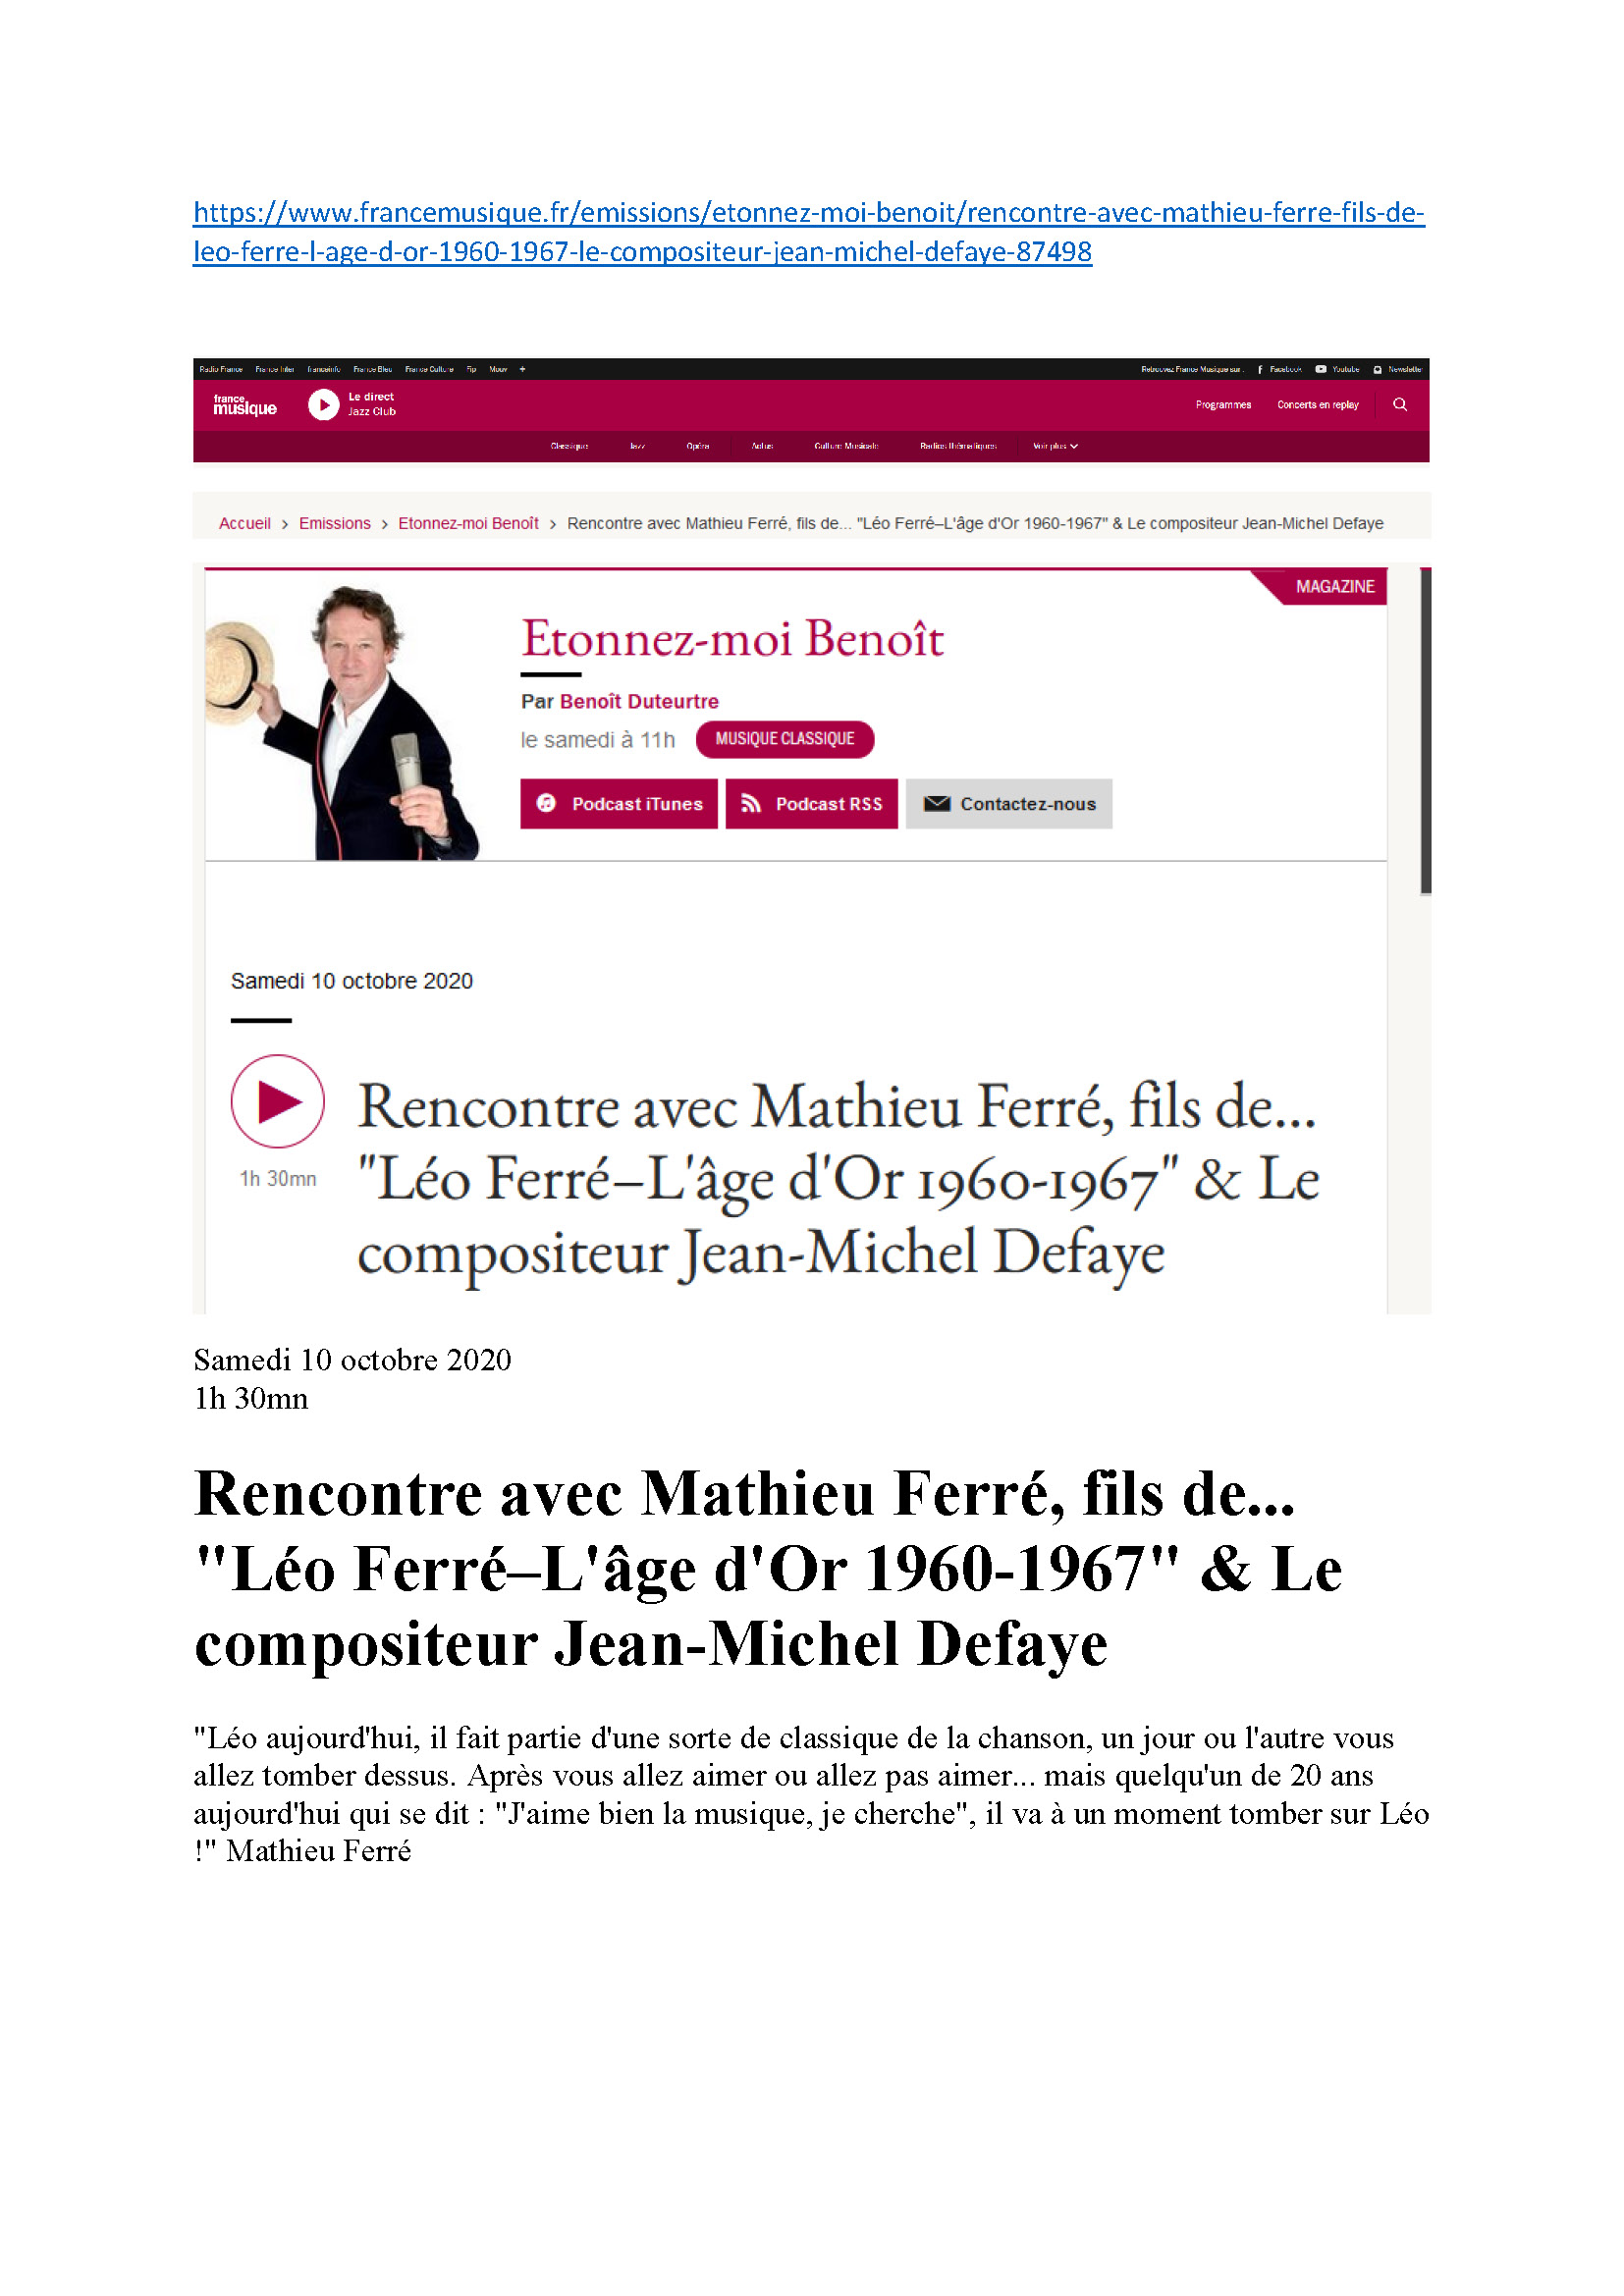 10/10/2020 France Musique Rencontre avec Mathieu Ferré et jean-Michel Defaye